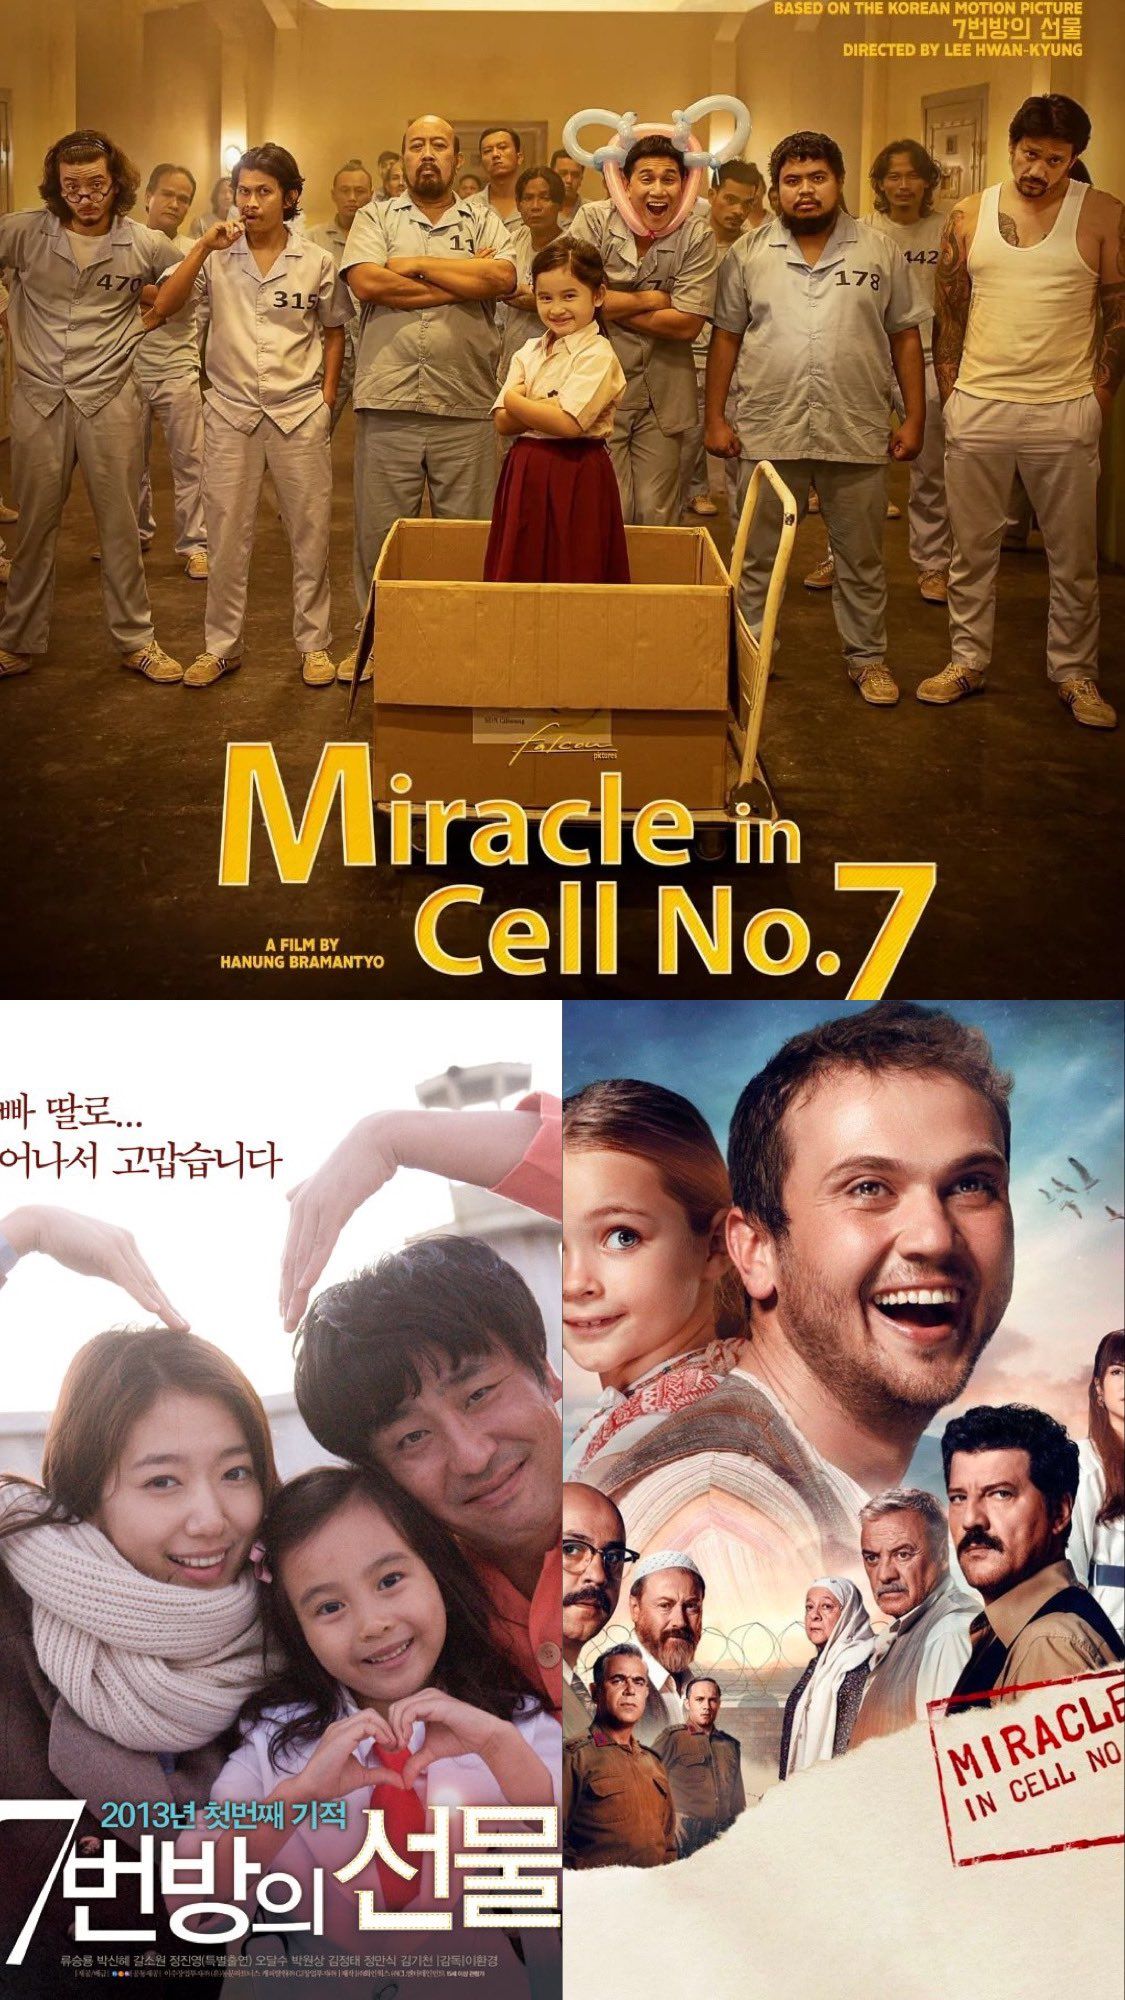 Nonton Miracle in Cell No 7 berbagai Versi di Netflix? Coba Akses Link Aman  di Bawah ini! - Info Semarang Raya